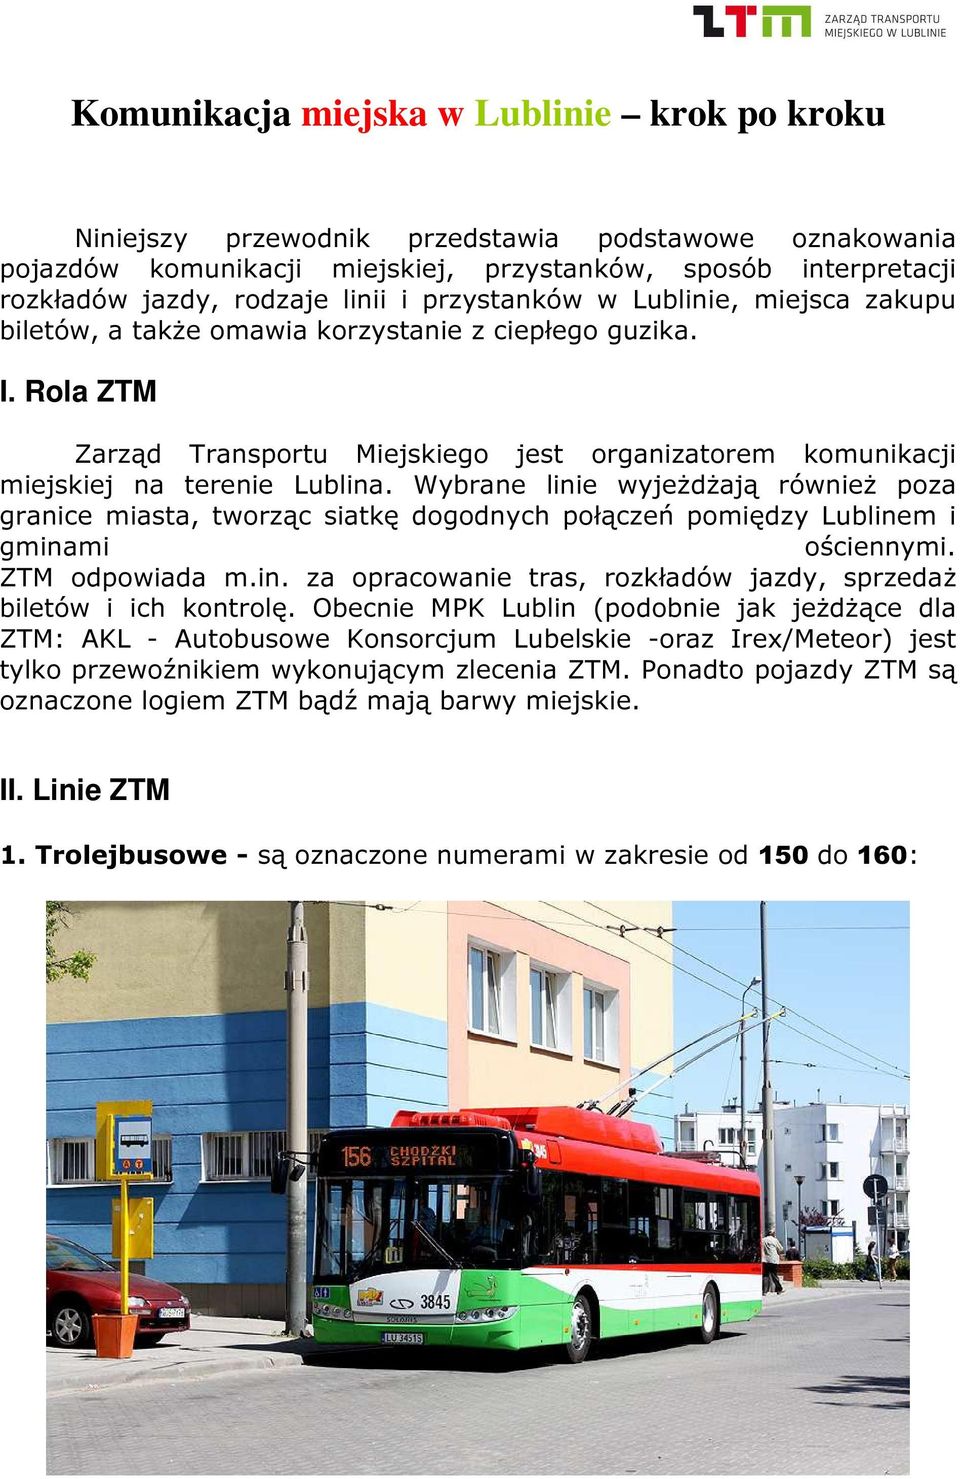 Wybrane linie wyjeżdżają również poza granice miasta, tworząc siatkę dogodnych połączeń pomiędzy Lublinem i gminami ościennymi. ZTM odpowiada m.in. za opracowanie tras, rozkładów jazdy, sprzedaż biletów i ich kontrolę.